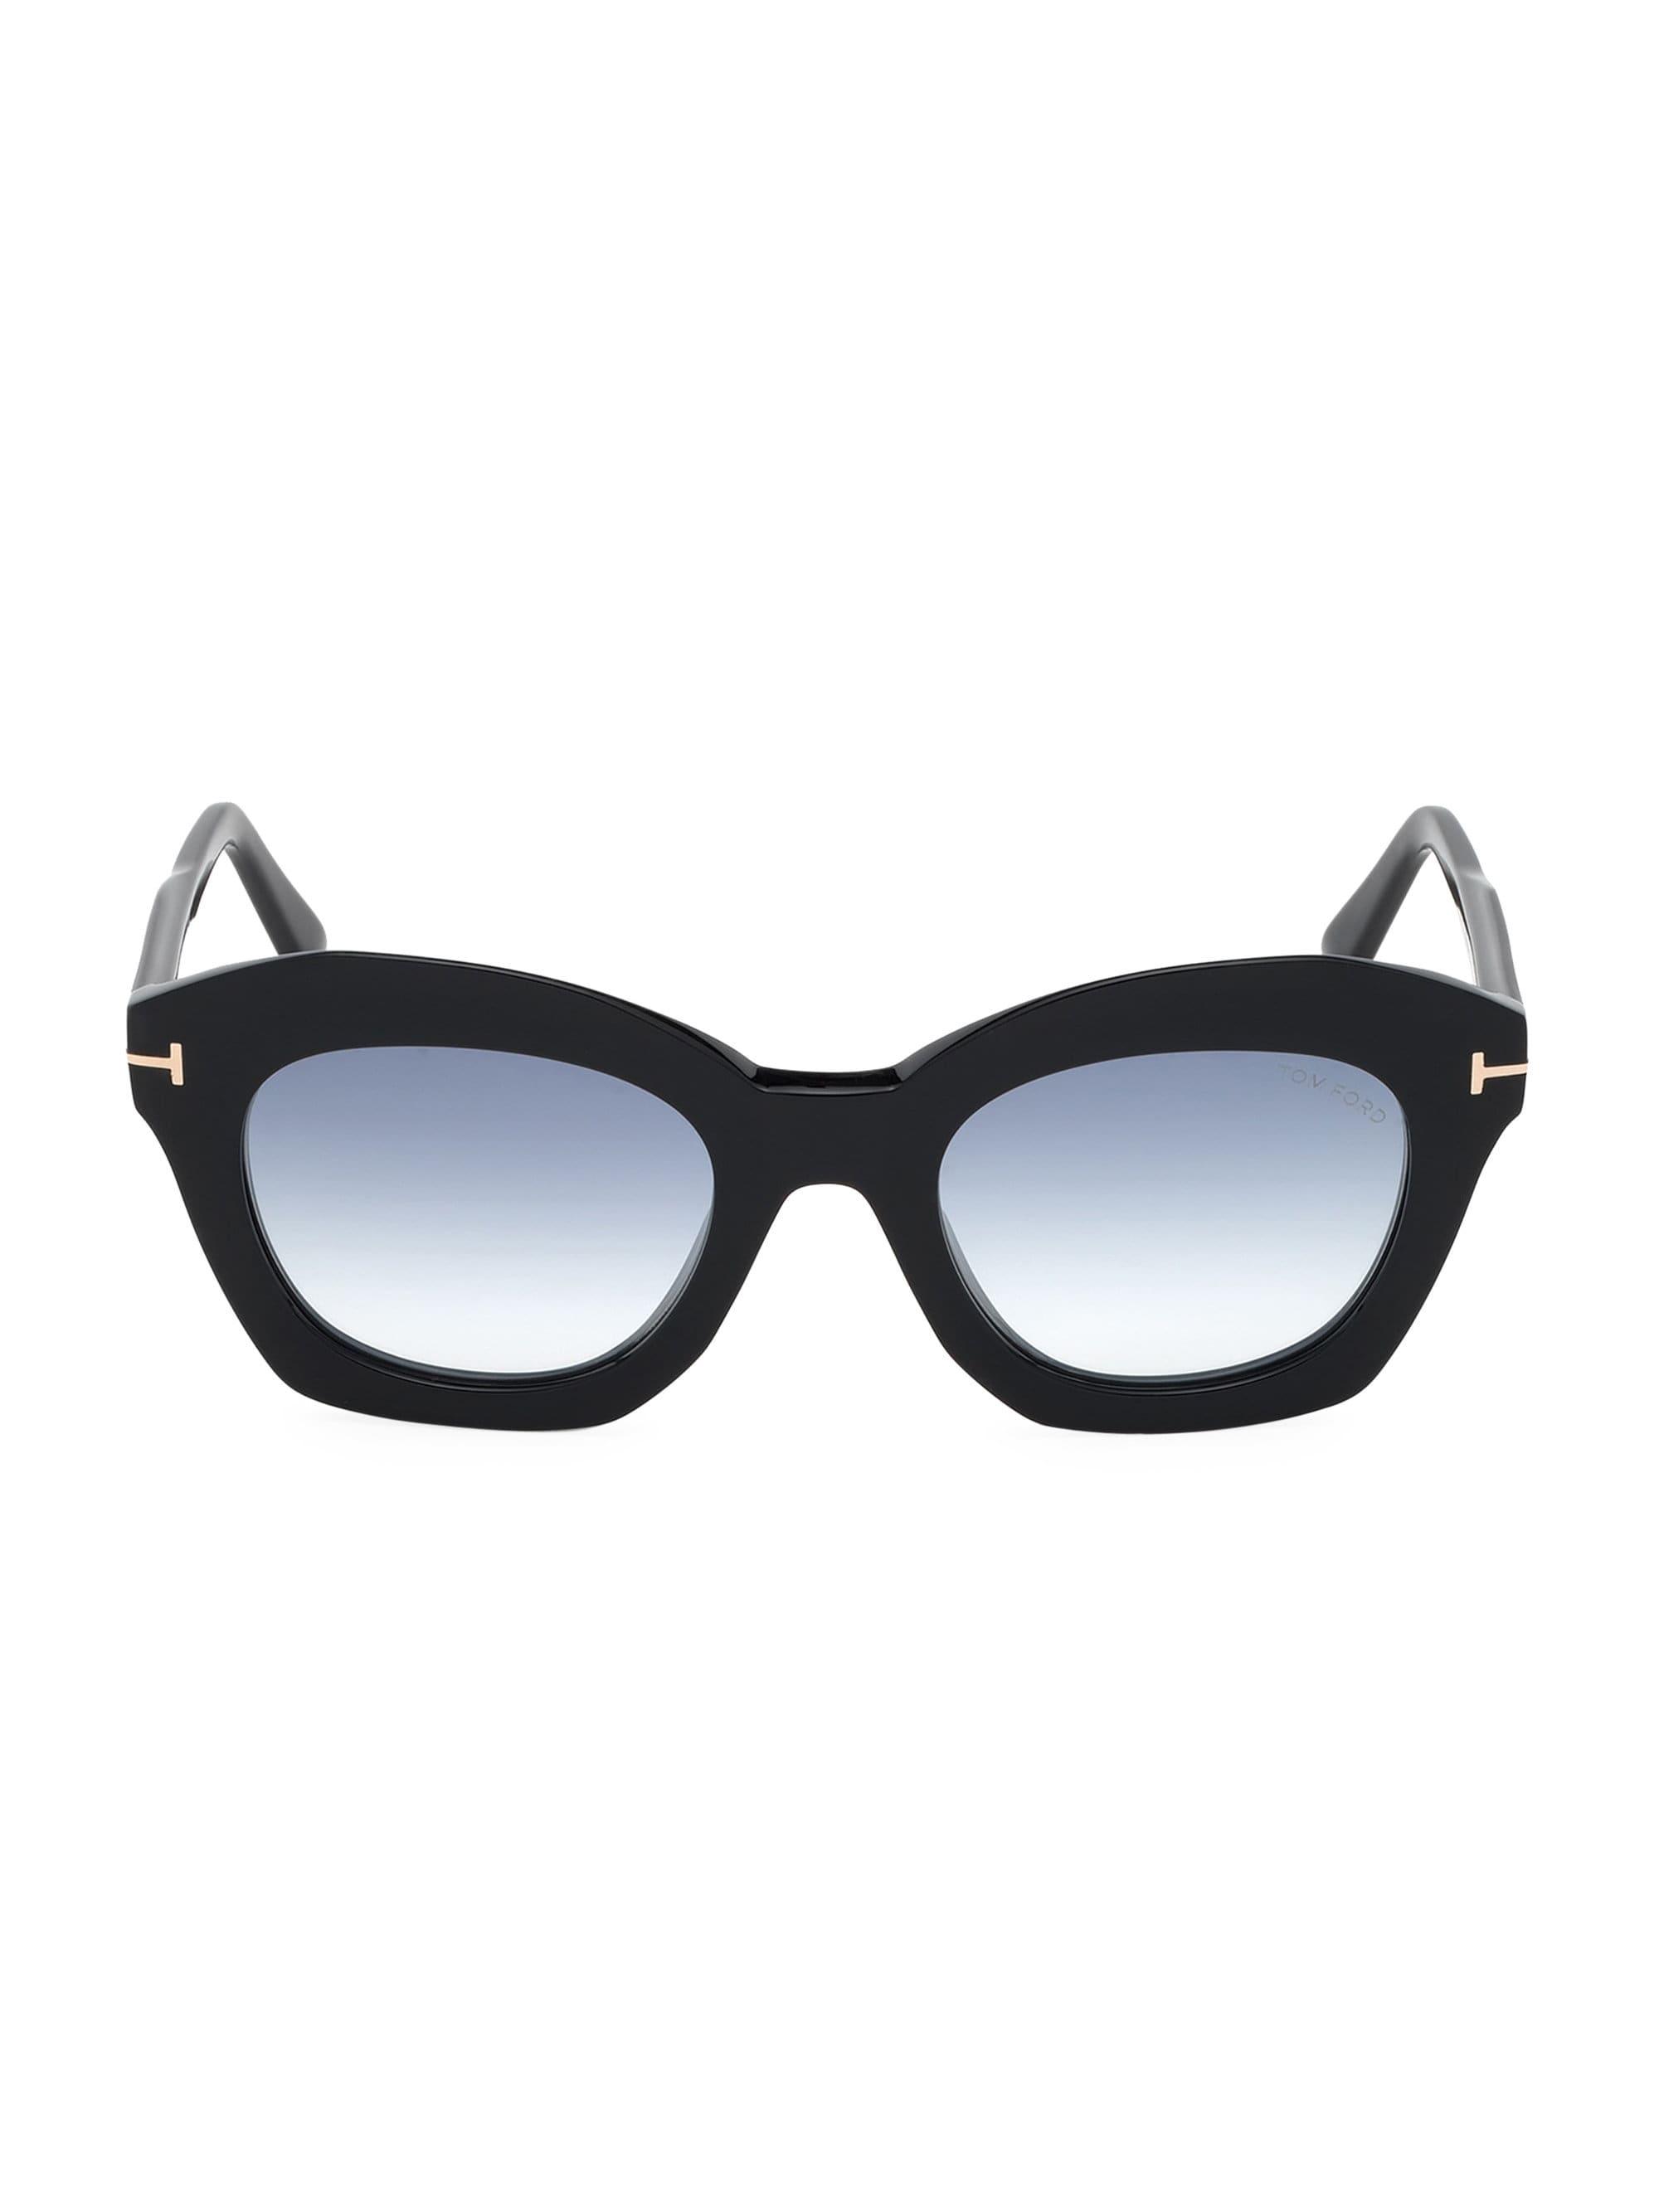 Tom Ford Women S Bardot 53mm Cat Eye Sunglasses Black